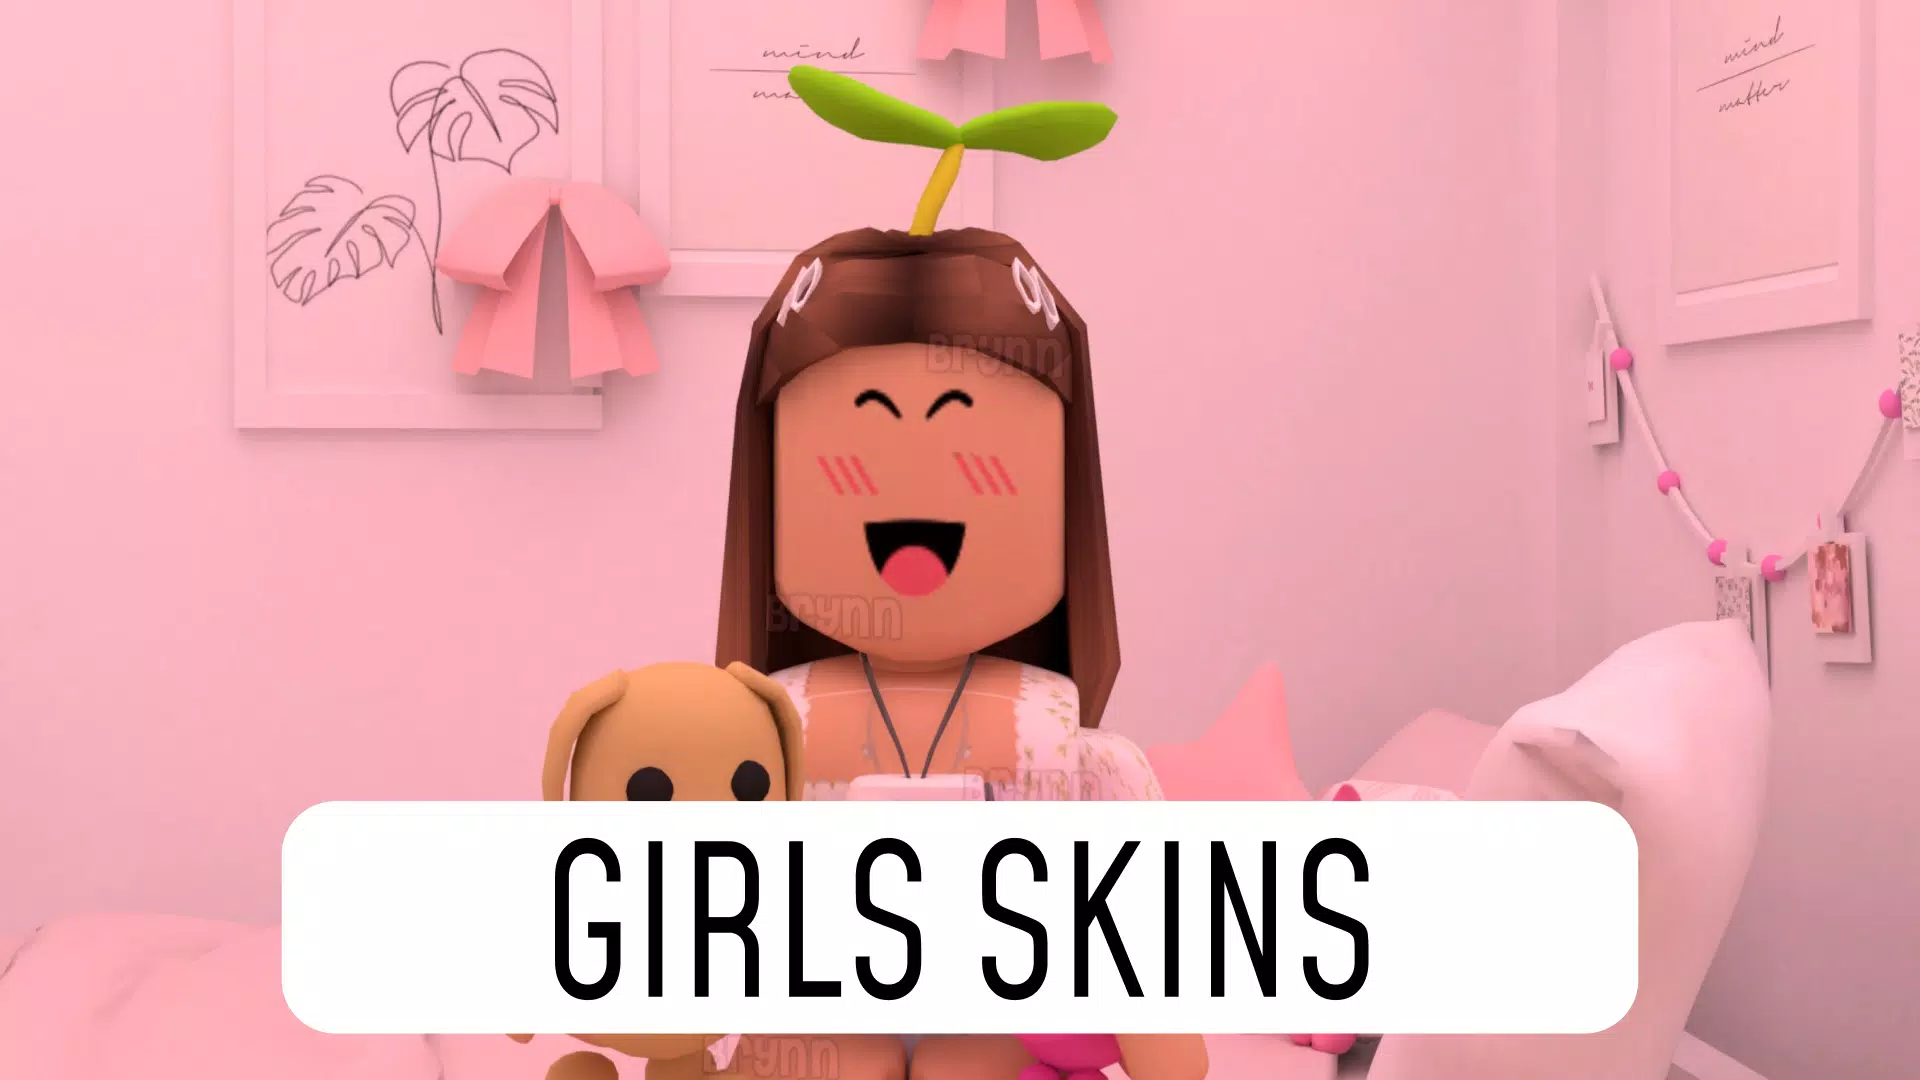 Download do APK de Skins girls para roblox para Android